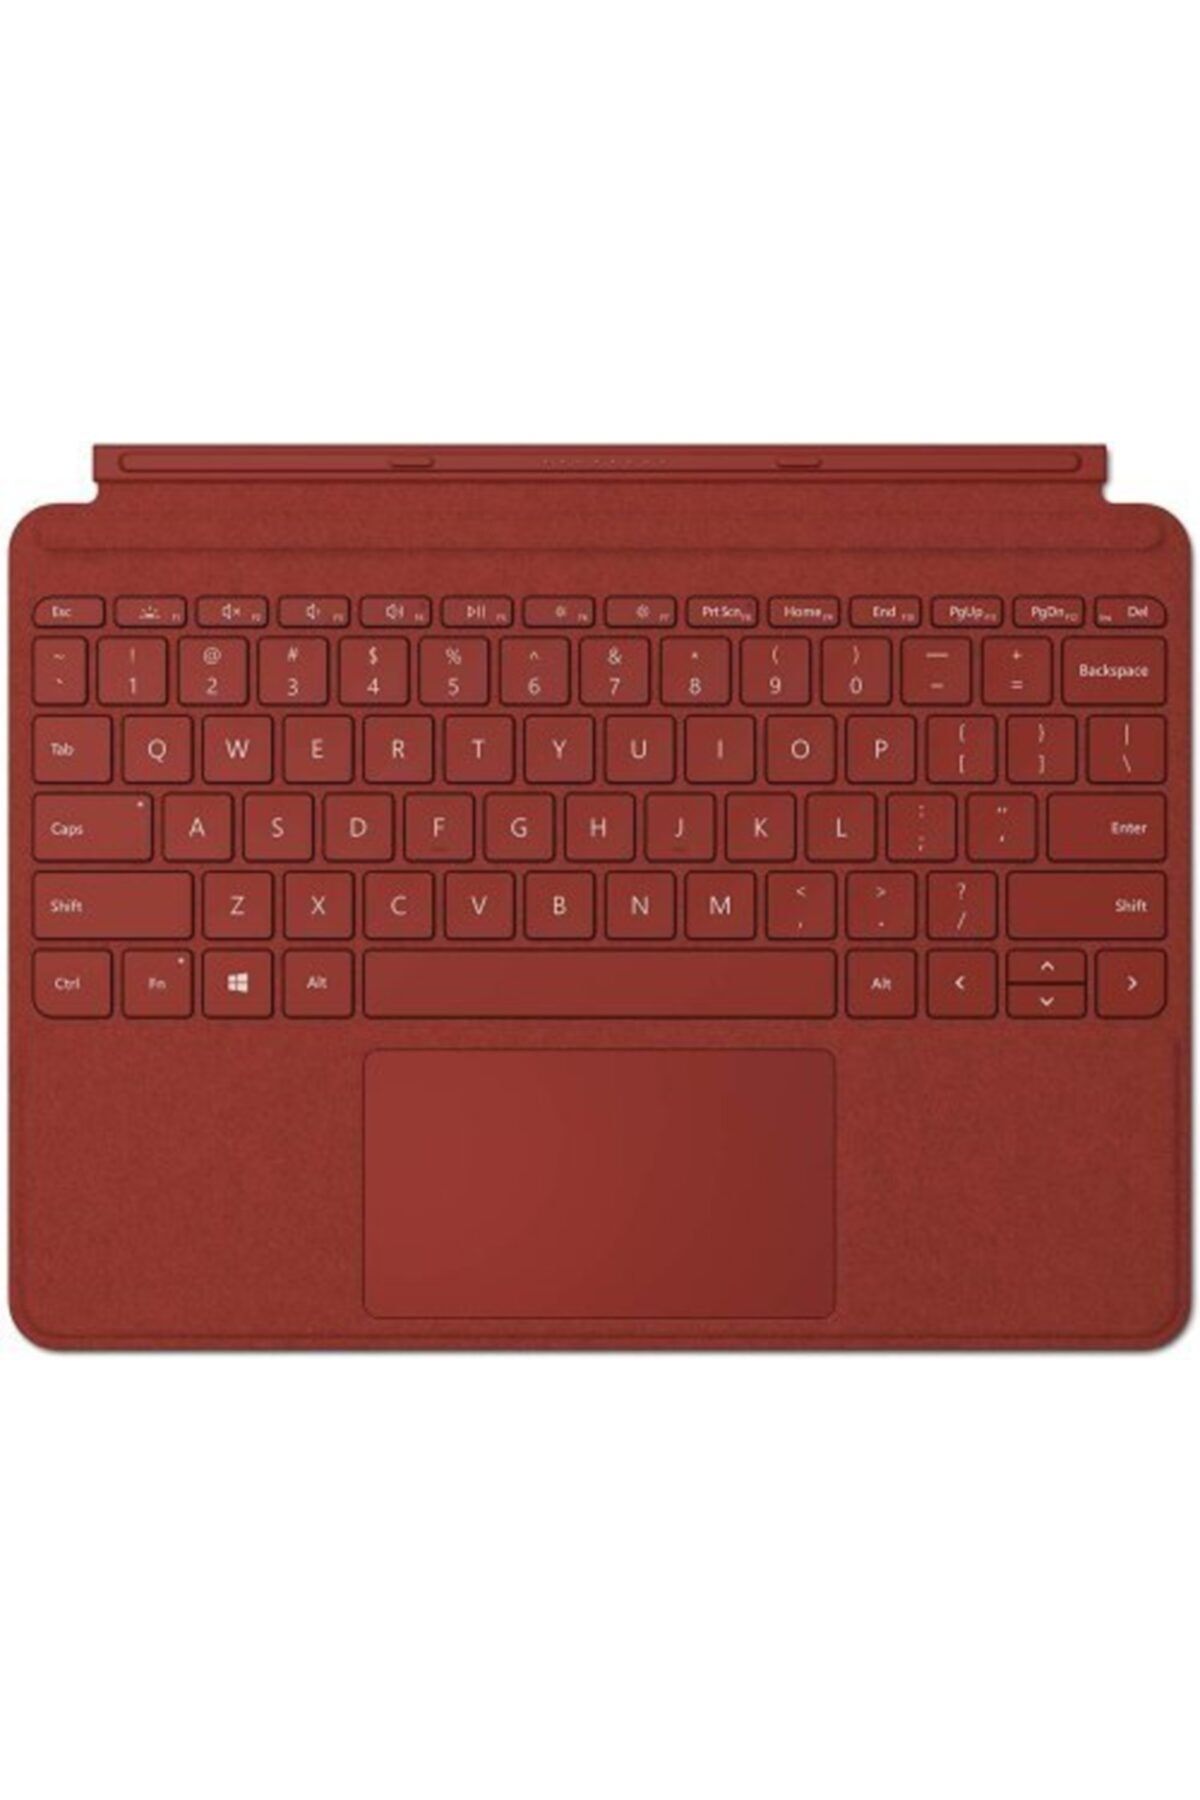 Microsoft Surface Pro Tipi Kapak–ingilizce Klavye-aydınlatmalı–model: Ffq-00101-poppy Kırmızısı